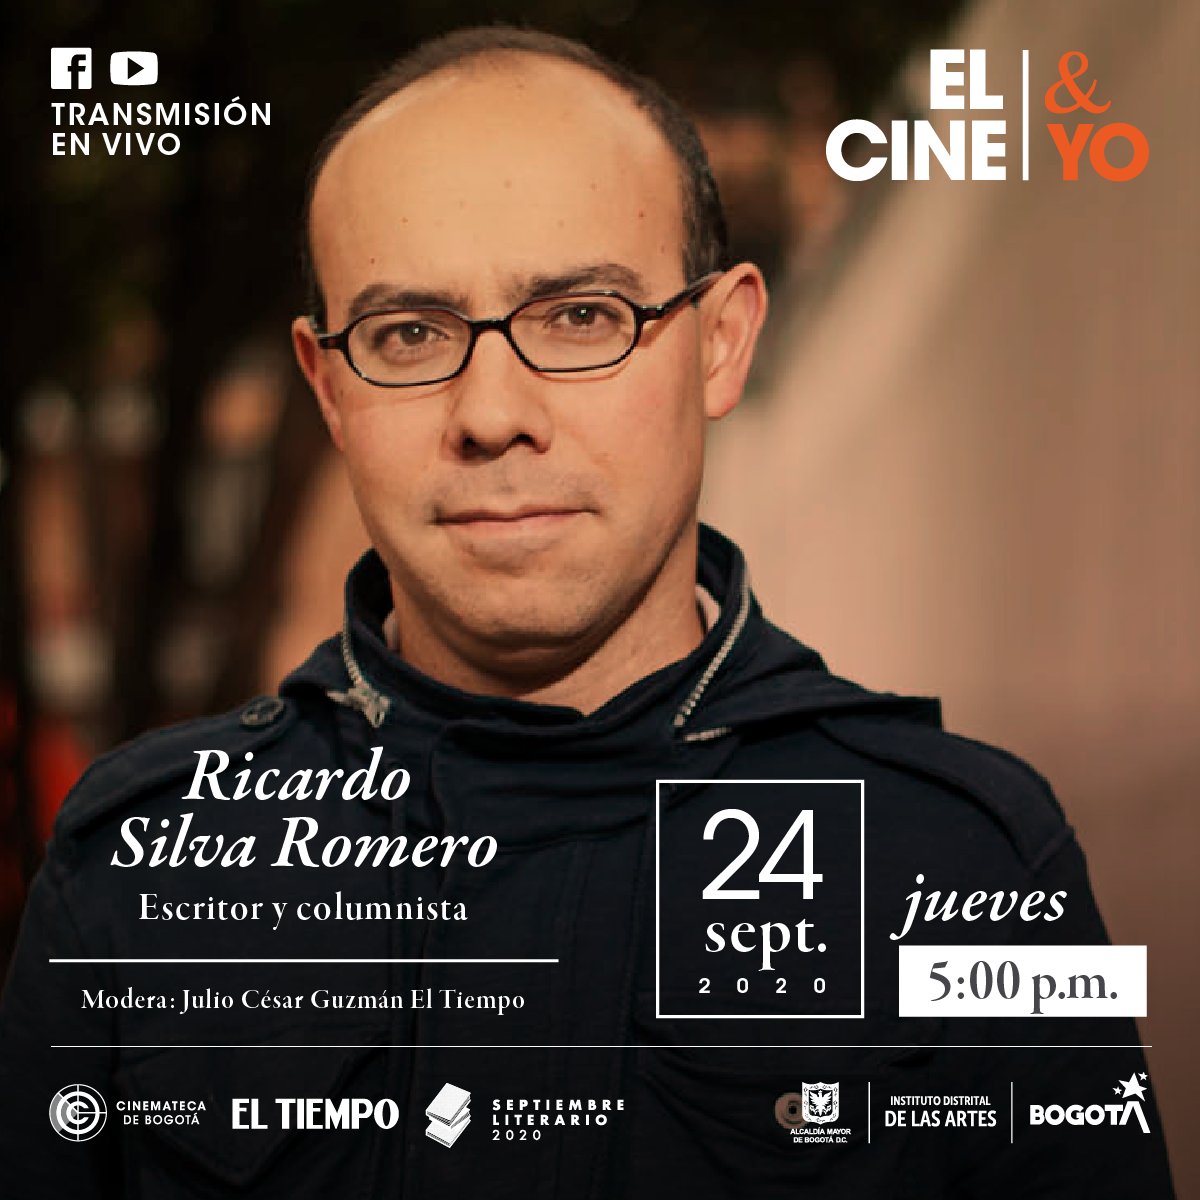 Ricardo Silva Romero en Cine y yo 